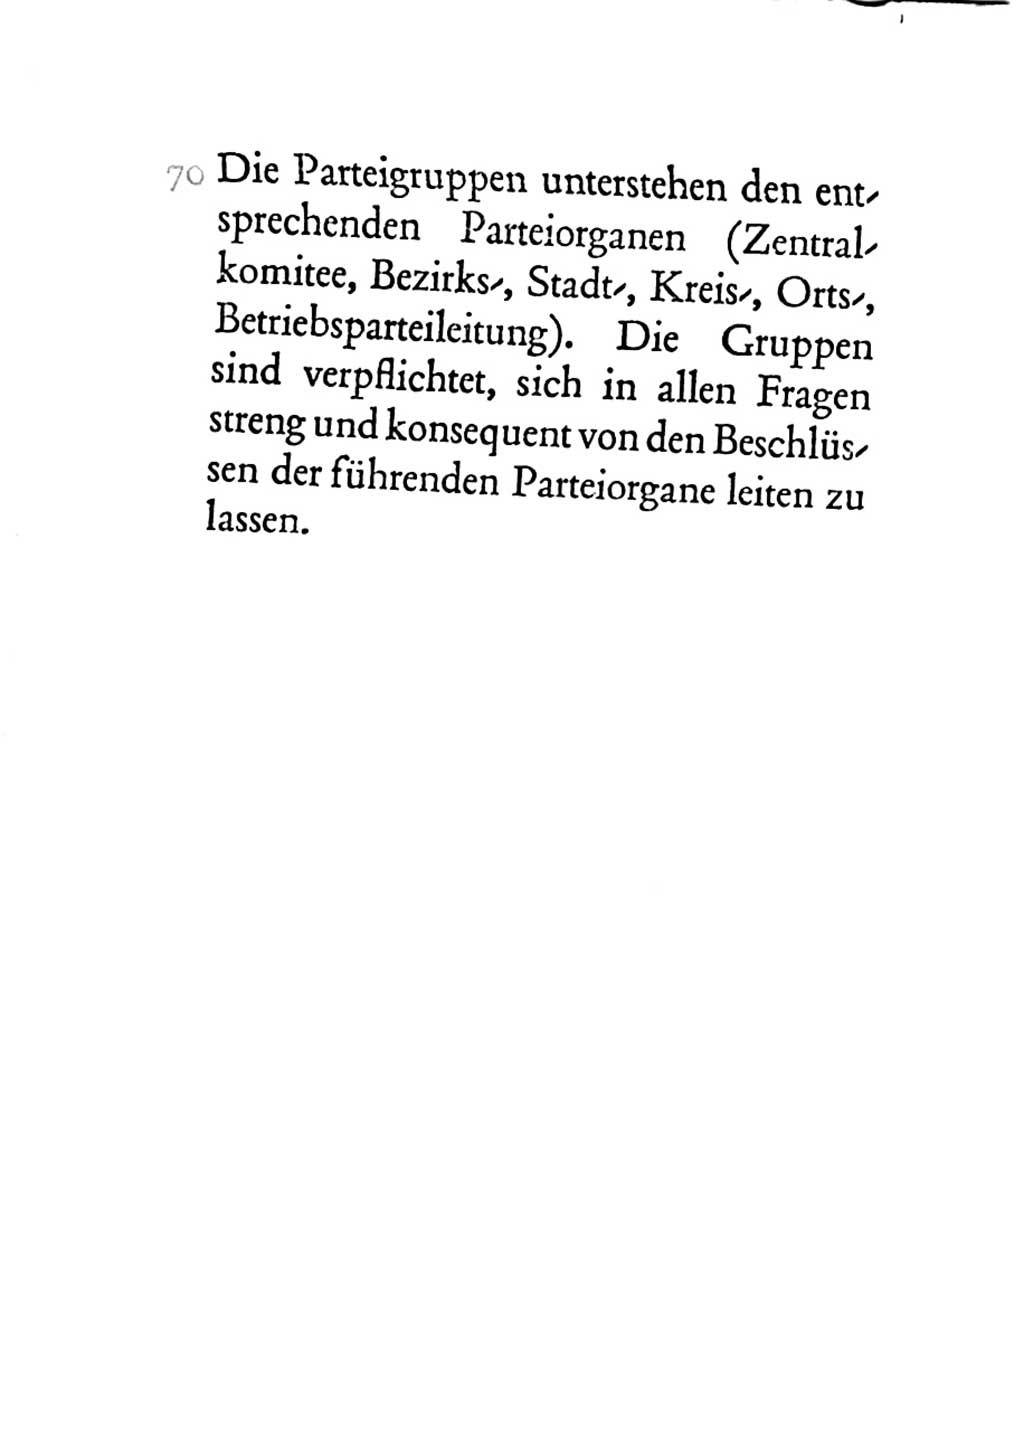 Statut der Sozialistischen Einheitspartei Deutschlands (SED) 1963, Seite 90 (St. SED DDR 1963, S. 90)